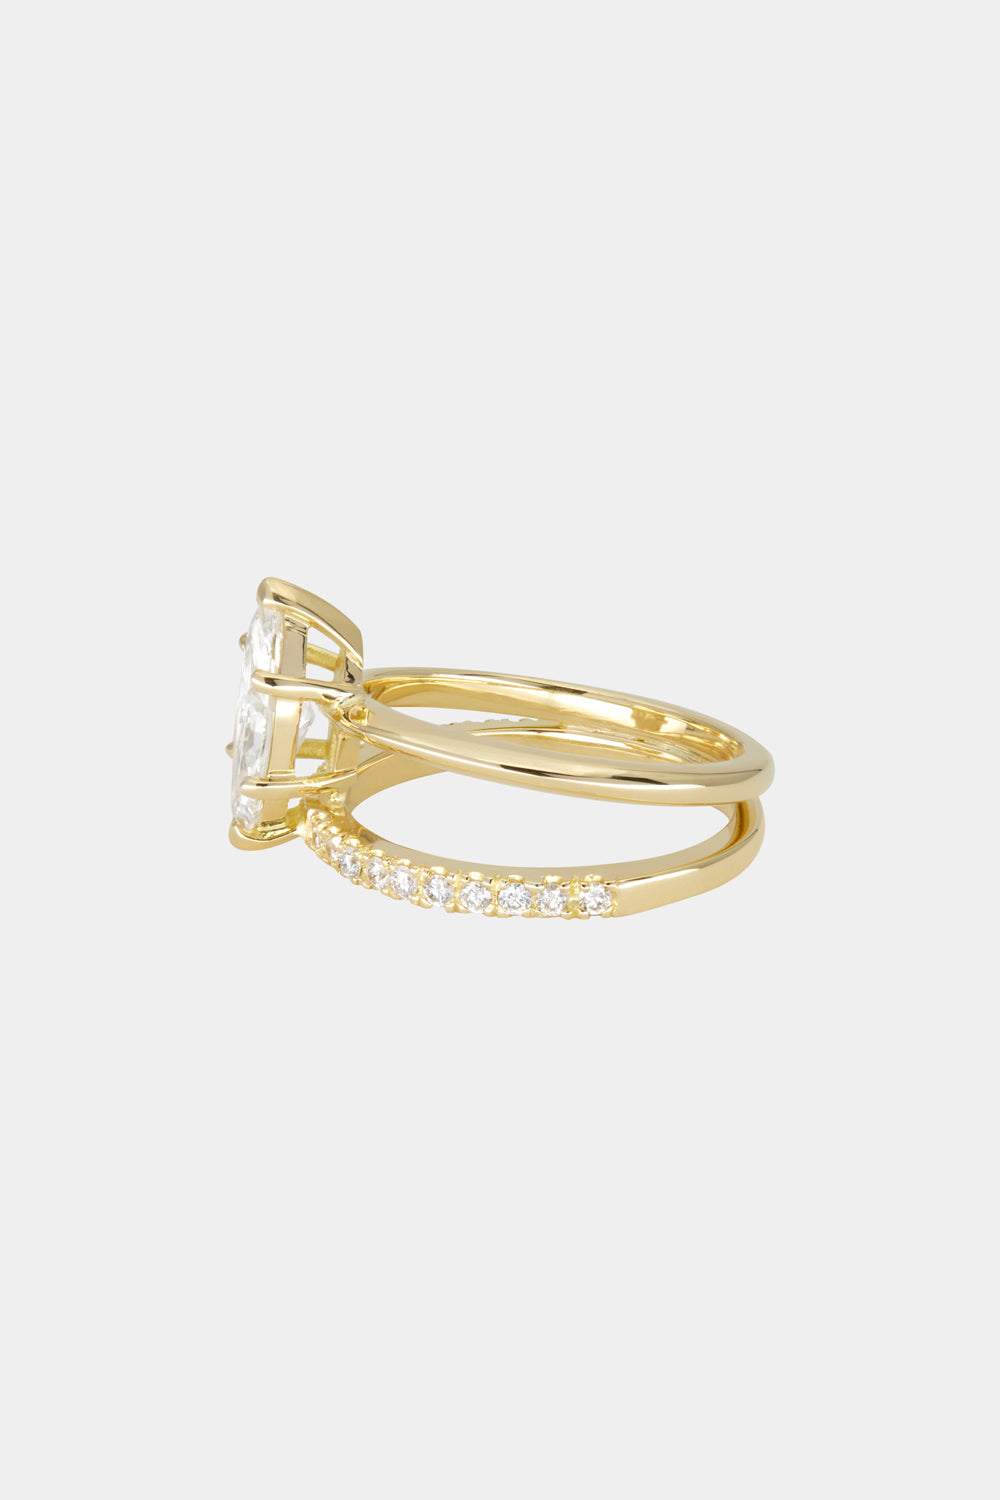 Double Band Marquise Diamond Ring | 18K Gold| Natasha Schweitzer